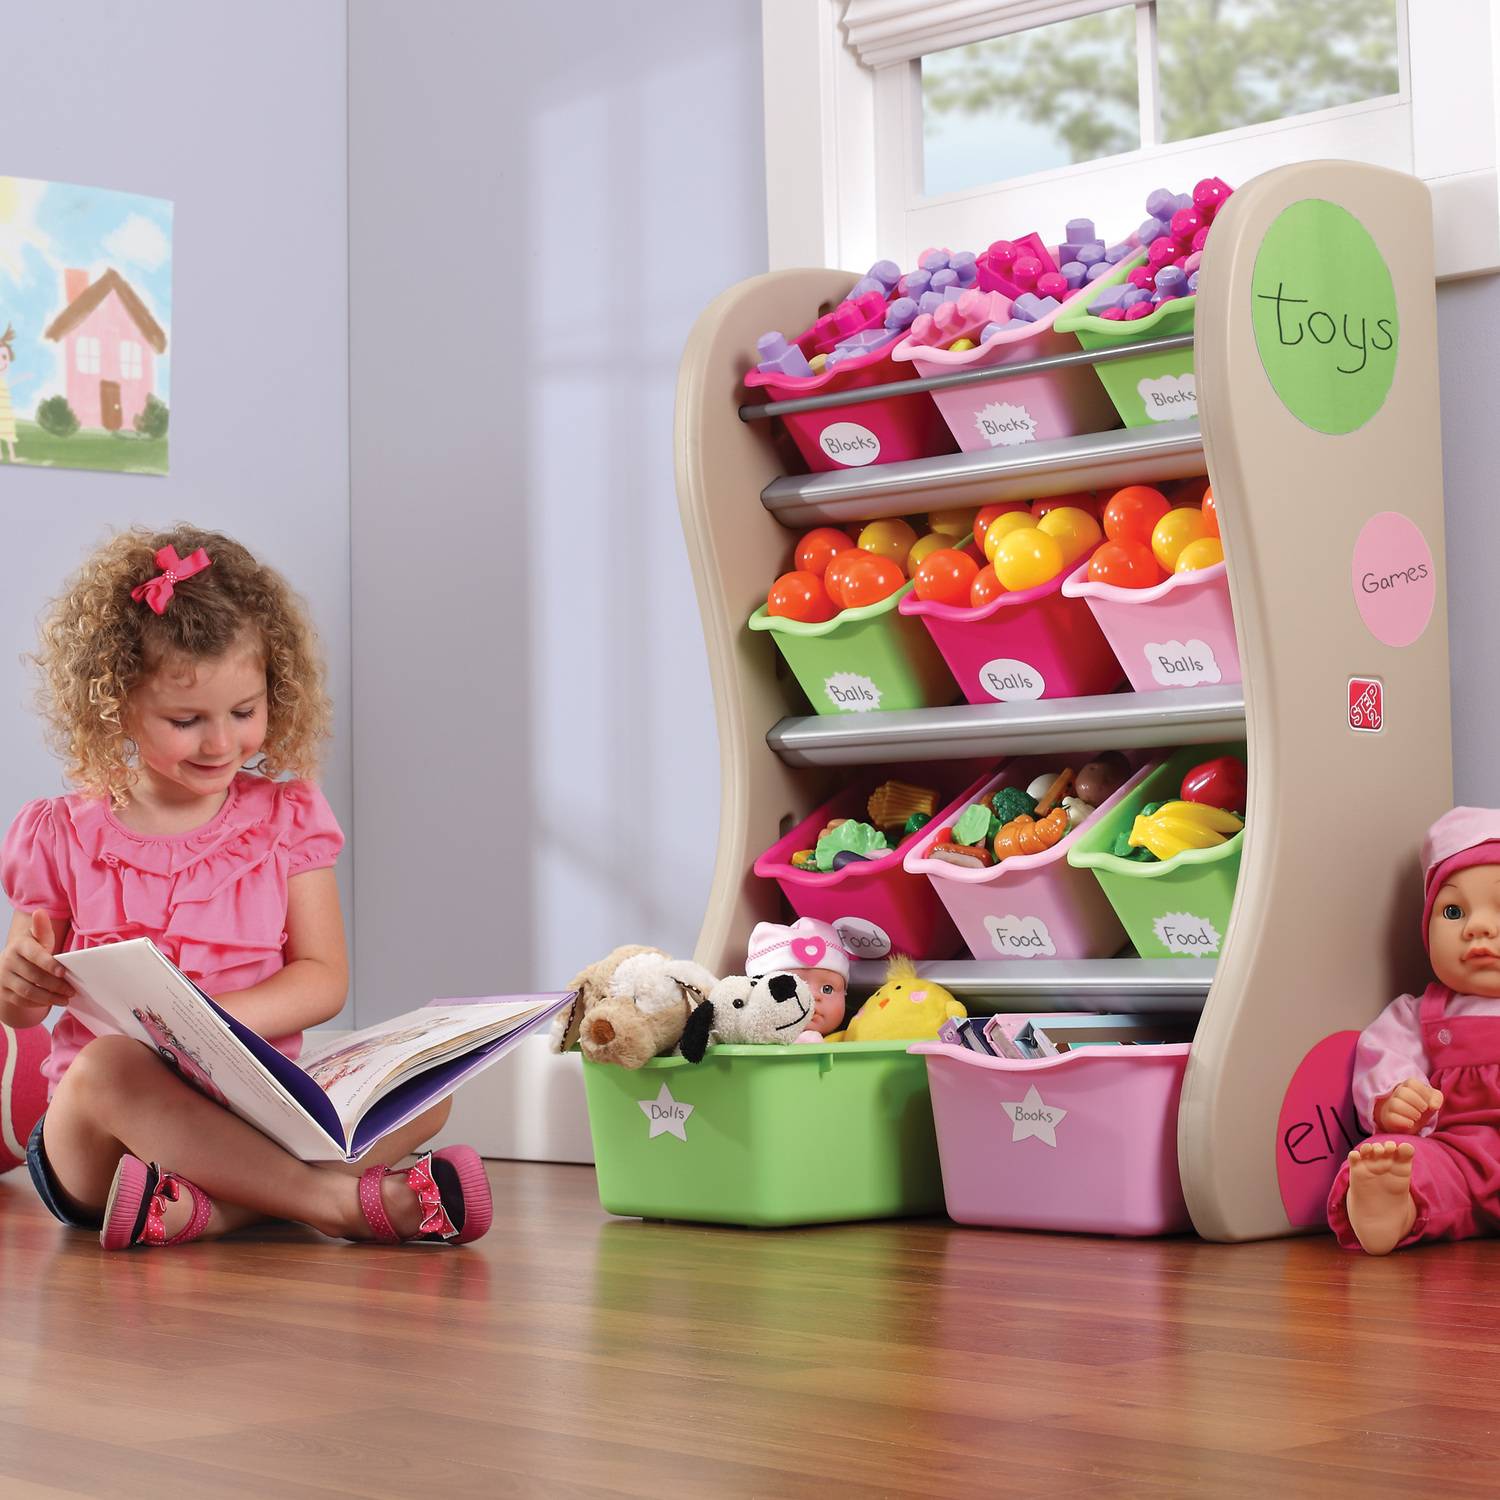 Хранение игрушек: идеи, полезные советы и способы хранения игрушек